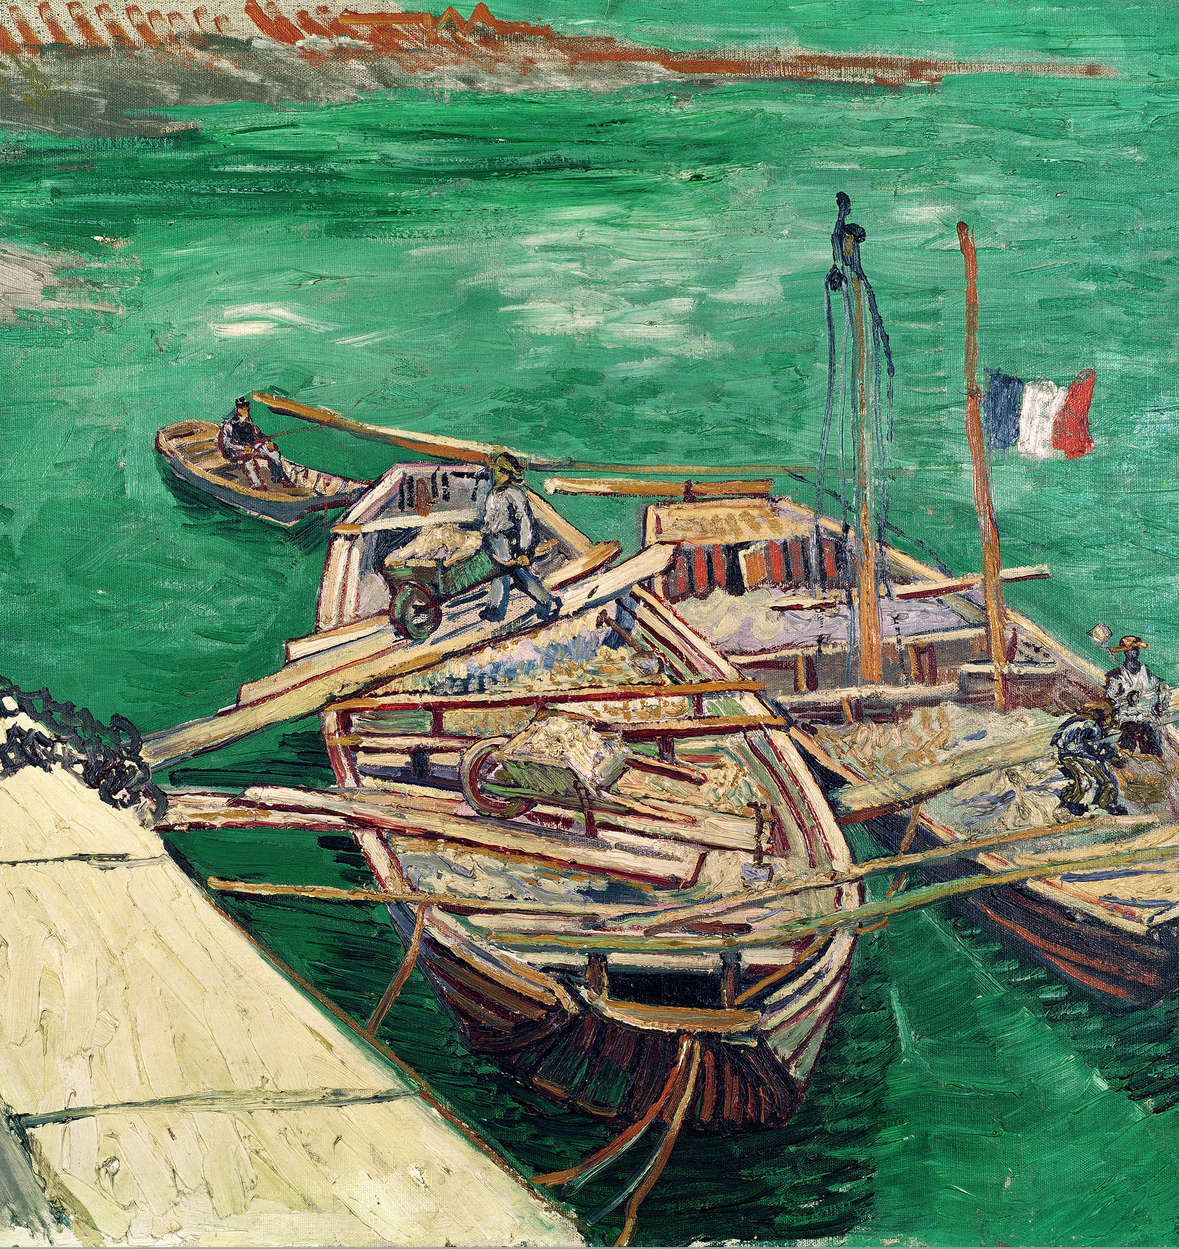             Fototapete "Landungssteg mit Booten" von Vincent van Gogh
        